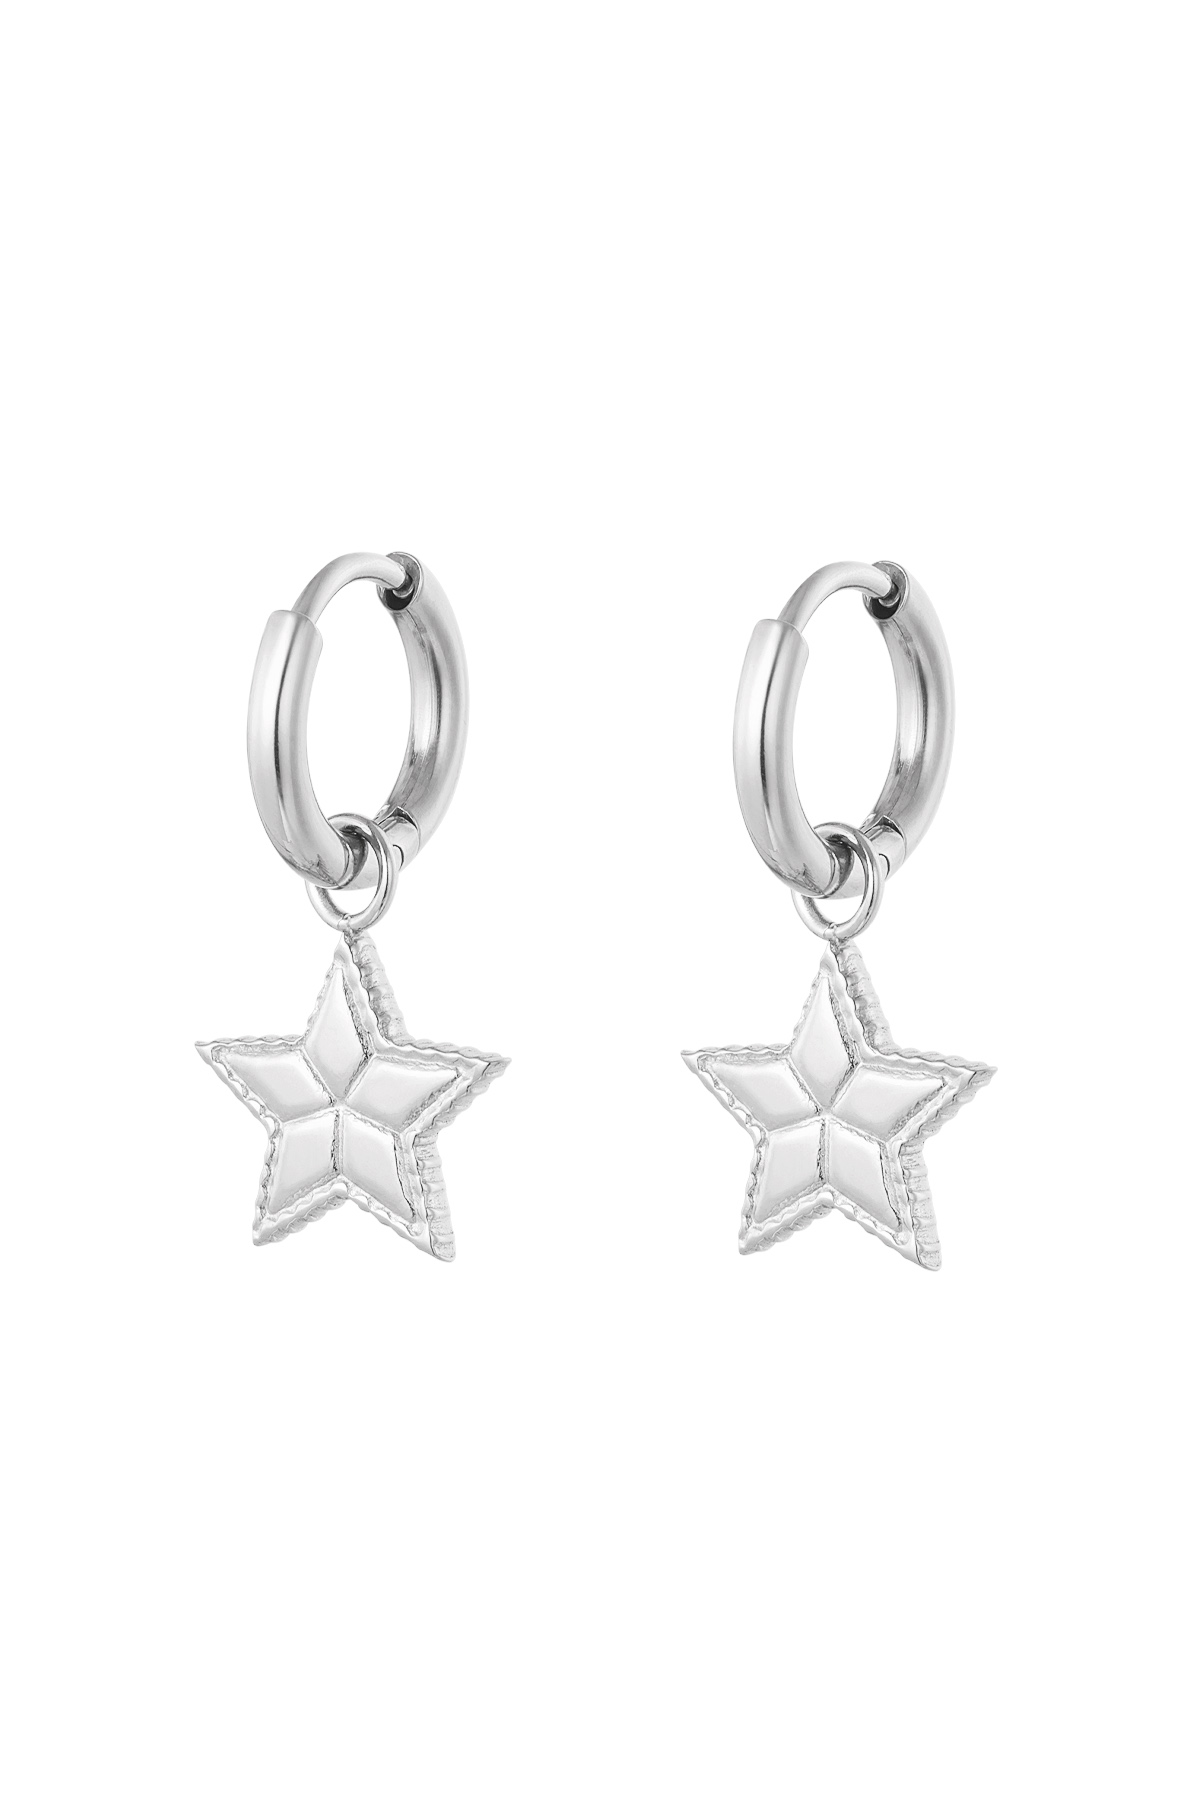 Ohrringe Stern mit Aufdruck - Silber